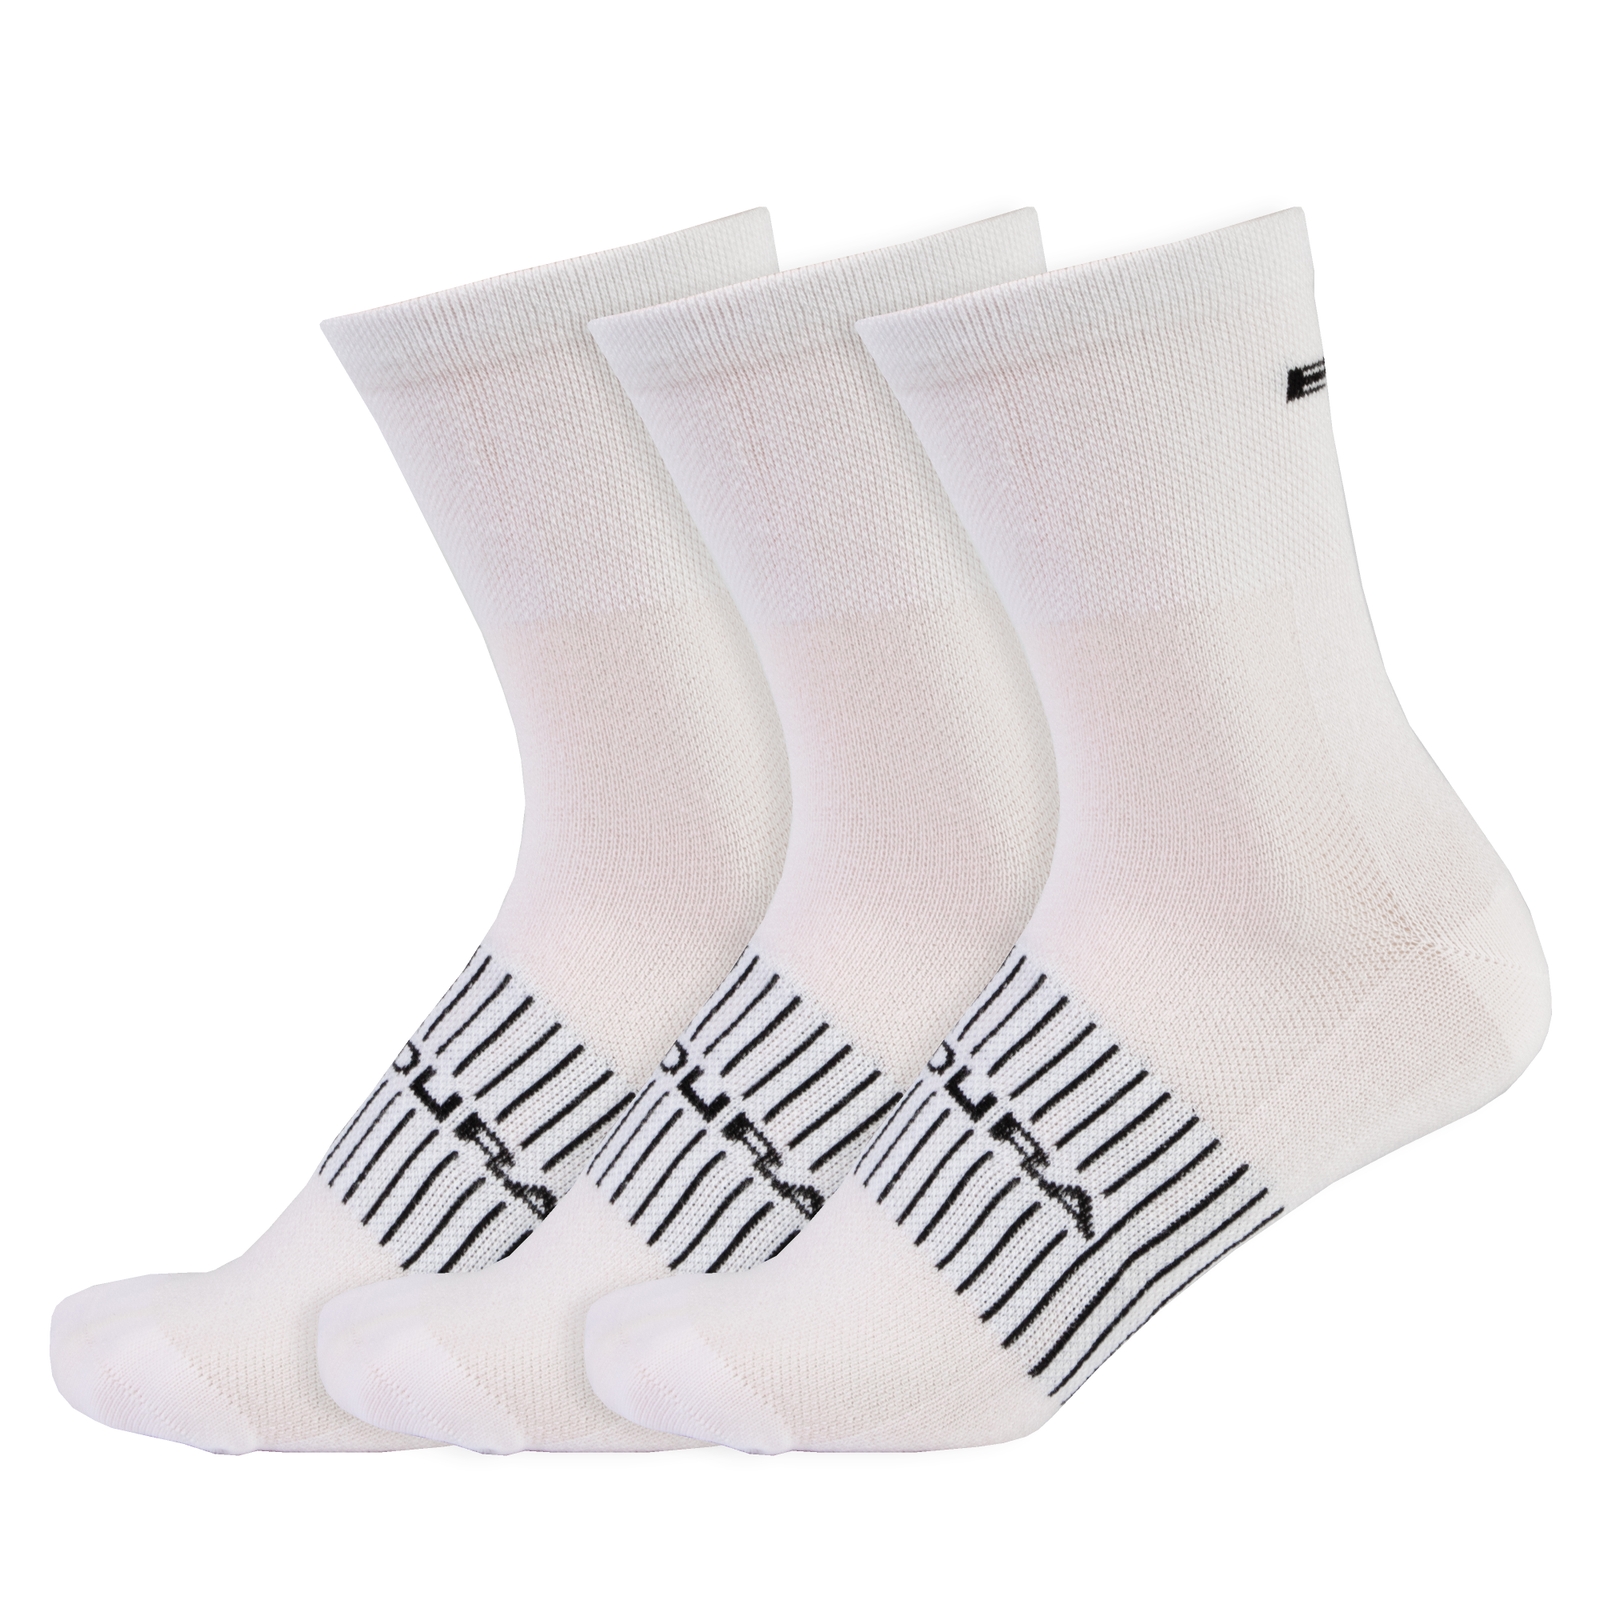 Endura Men's Coolmax® Race Sock (Triple Pack) - White